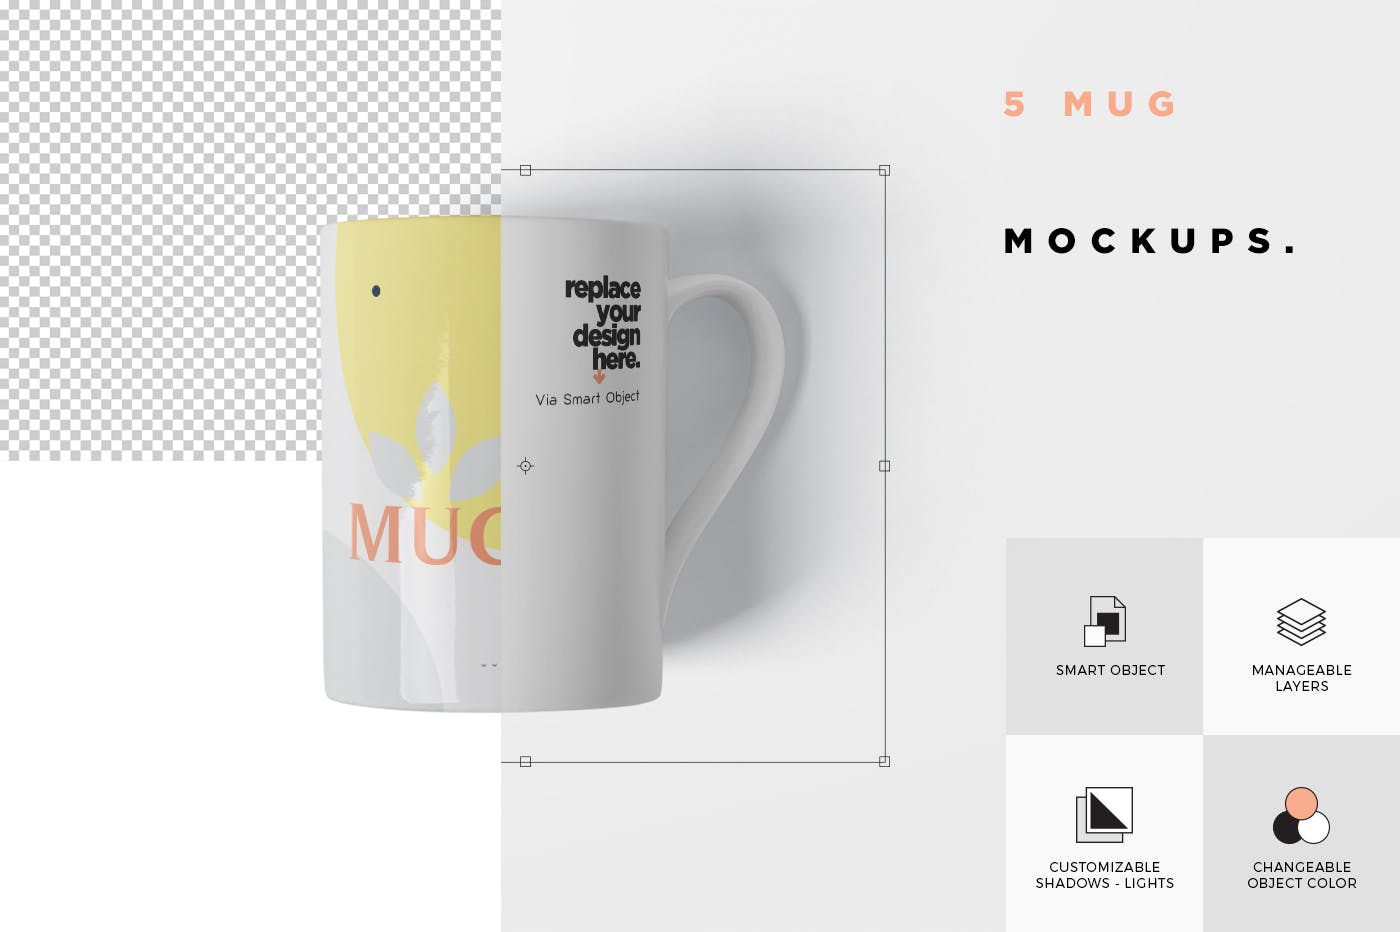 马克杯图案设计多视觉预览样机模板 5 Mug Mockups插图(6)